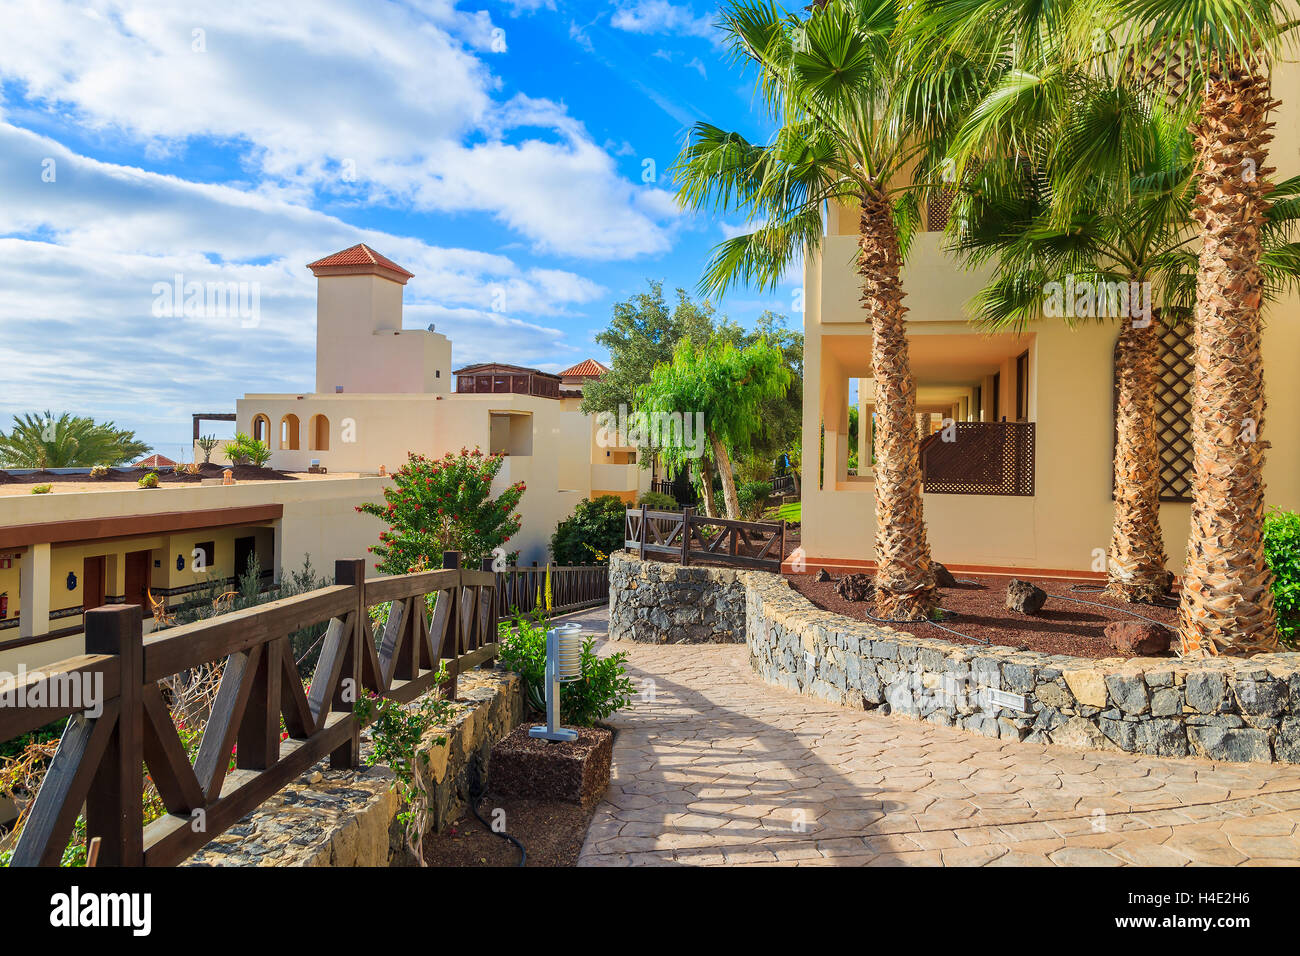 MORRO Jable Fuerteventura - 6 FEB 2014: a piedi vicolo in giardini tropicali di luxury hotel Barcelo Jandia Mar. Questa è una popolare meta di vacanza per i turisti sull isola di Fuerteventura. Foto Stock